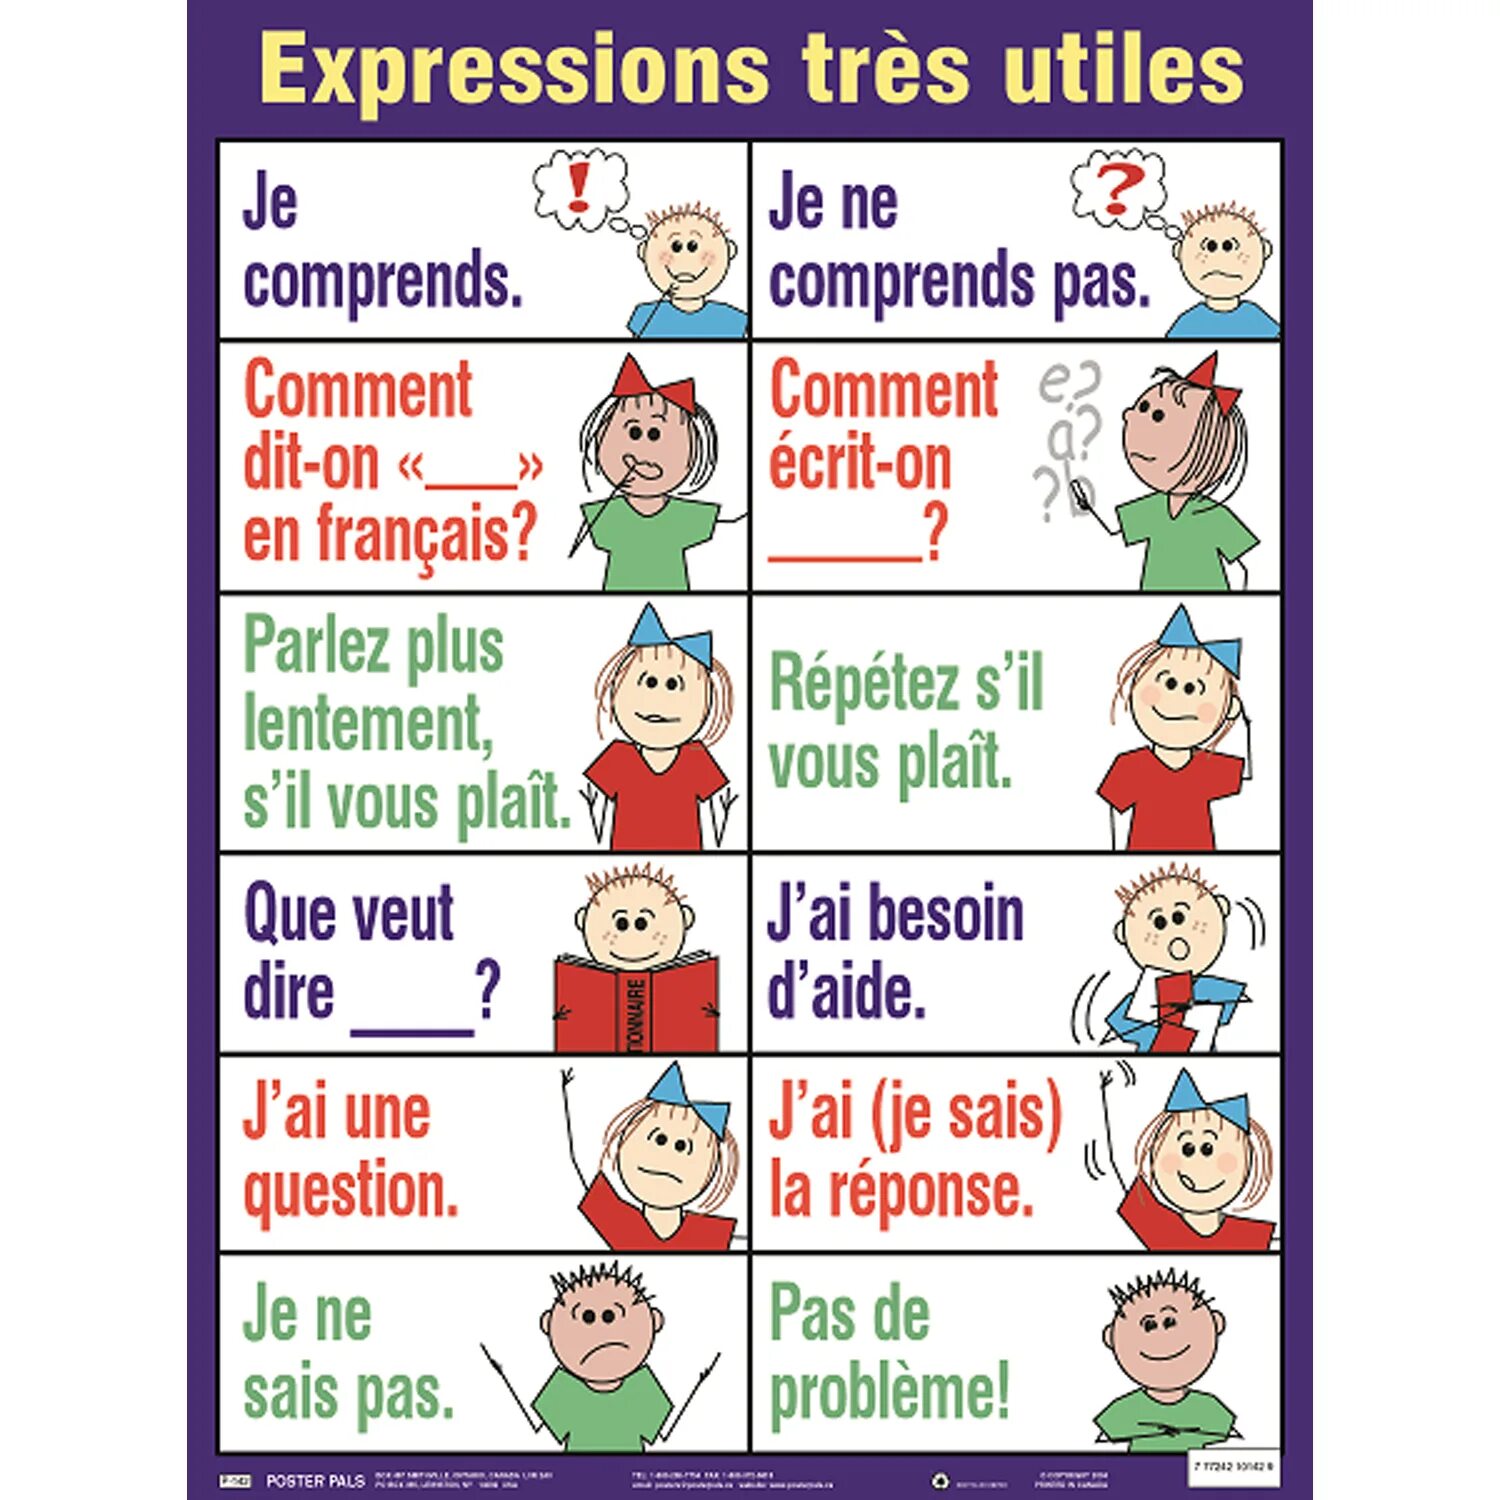 Series en francais. Comment французский. On ecrit на французском. Французский язык parler. Parler Français penser Français картинки.